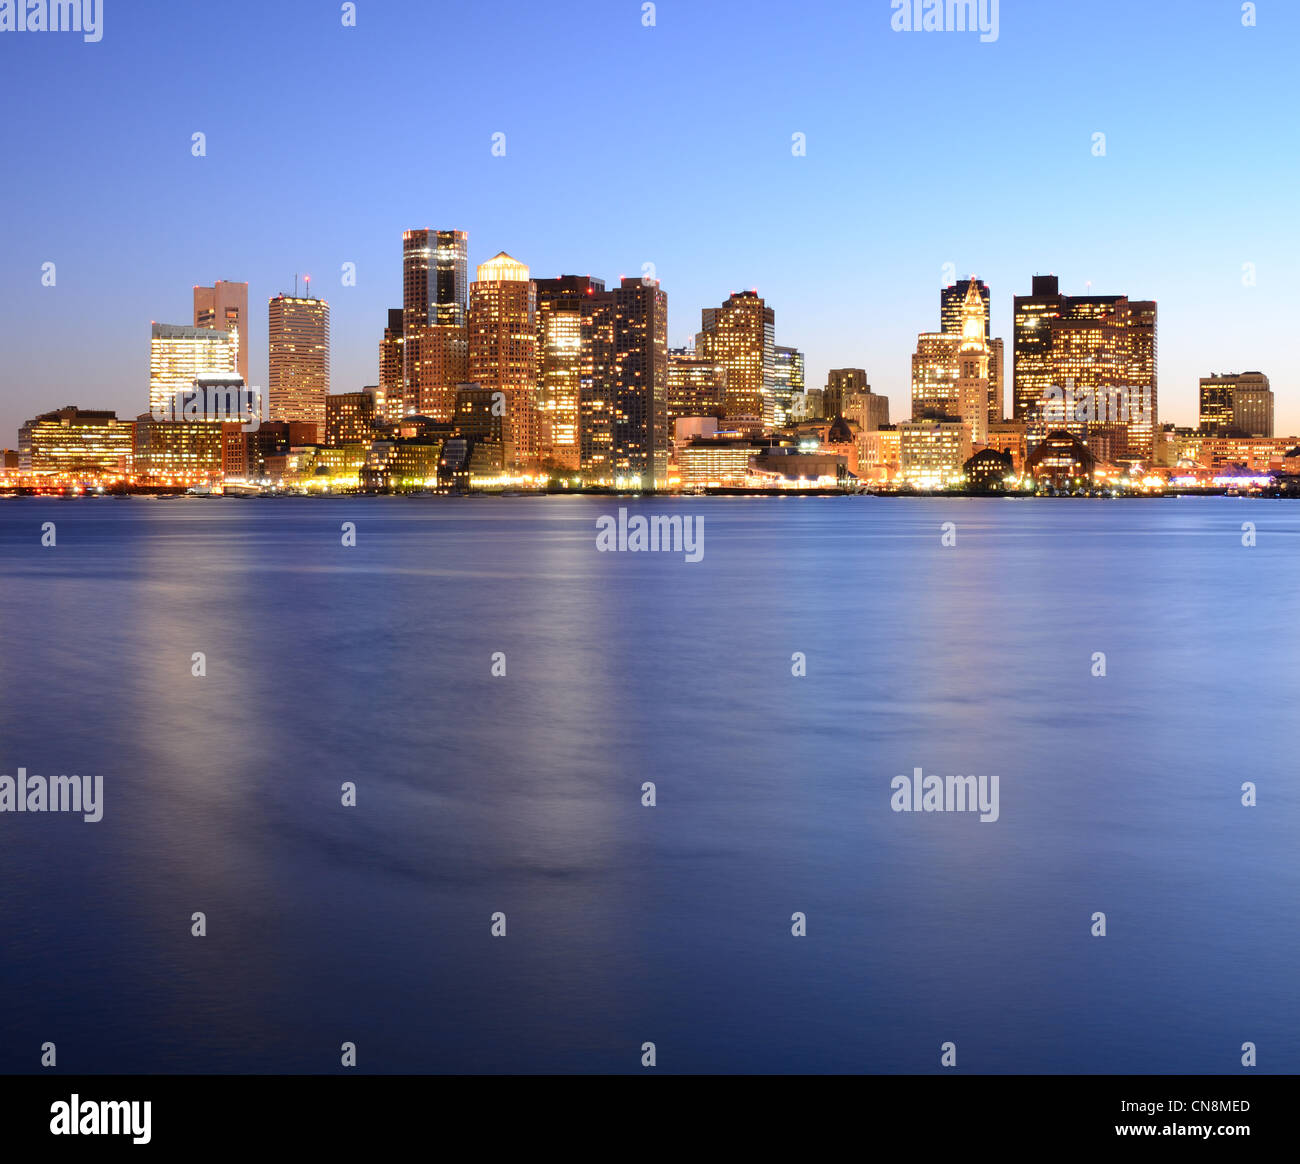 El distrito financiero de Boston, Massachusetts. Foto de stock